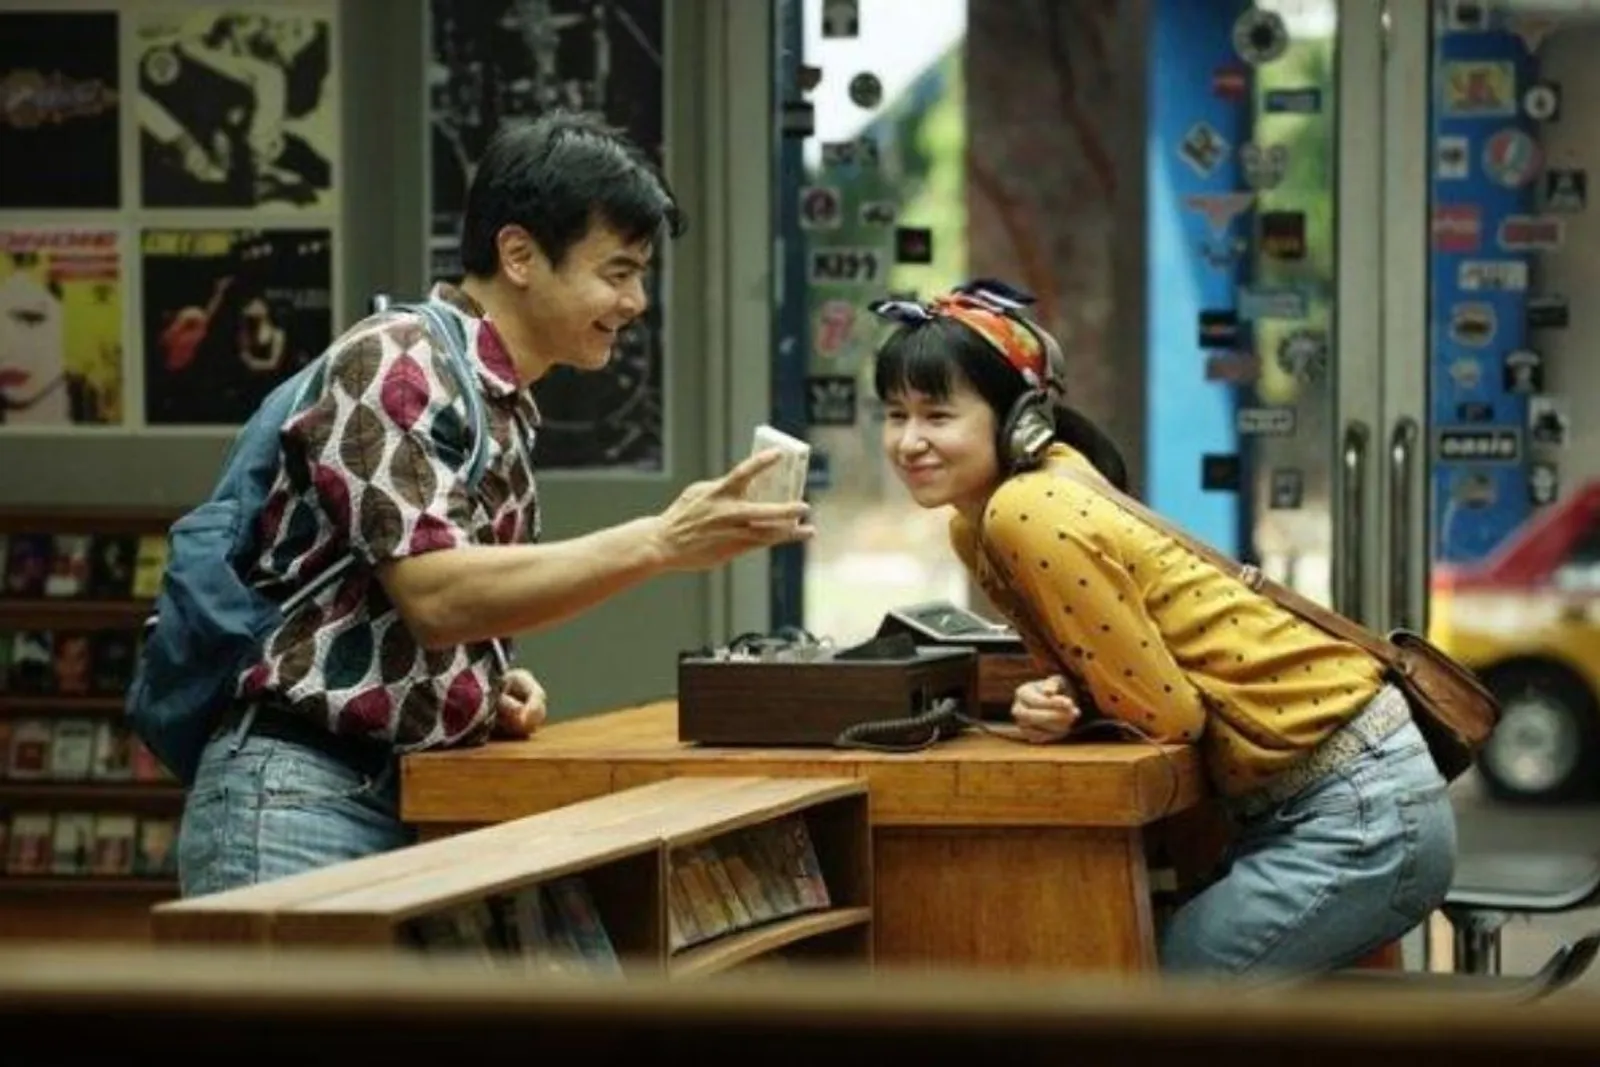 Review Film Susi Susanti Love All: Sang Legenda Bulu Tangkis 